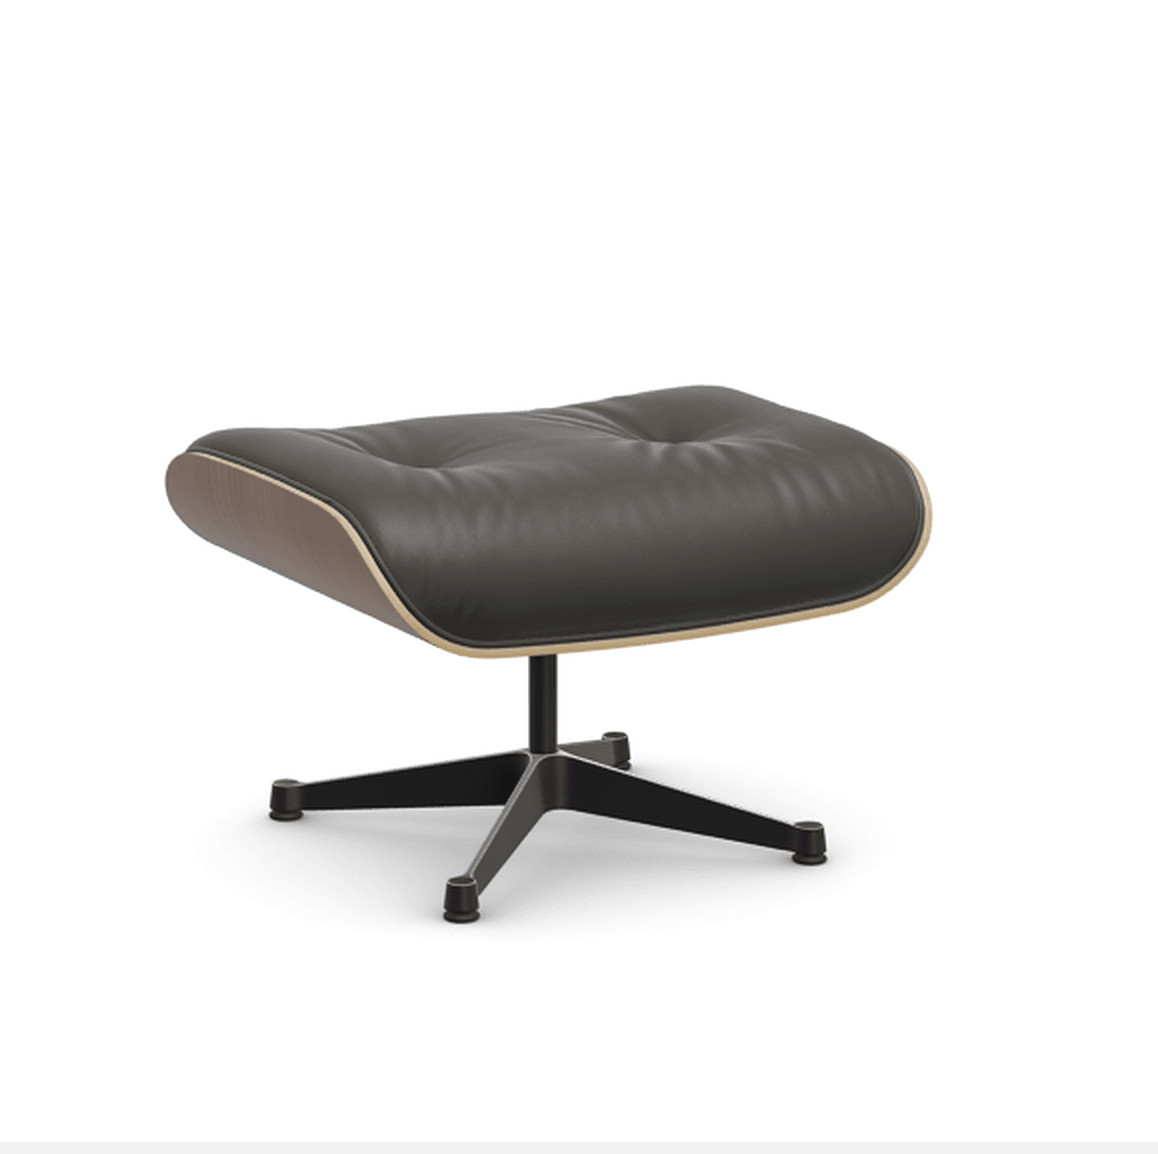 Vitra Lounge Chair Ottoman - 45 Nussbaum schwarz pigmentiert - Leder premium F 61 umbragrau -  03/12 Aluminium poliert/tiefschwarz--30